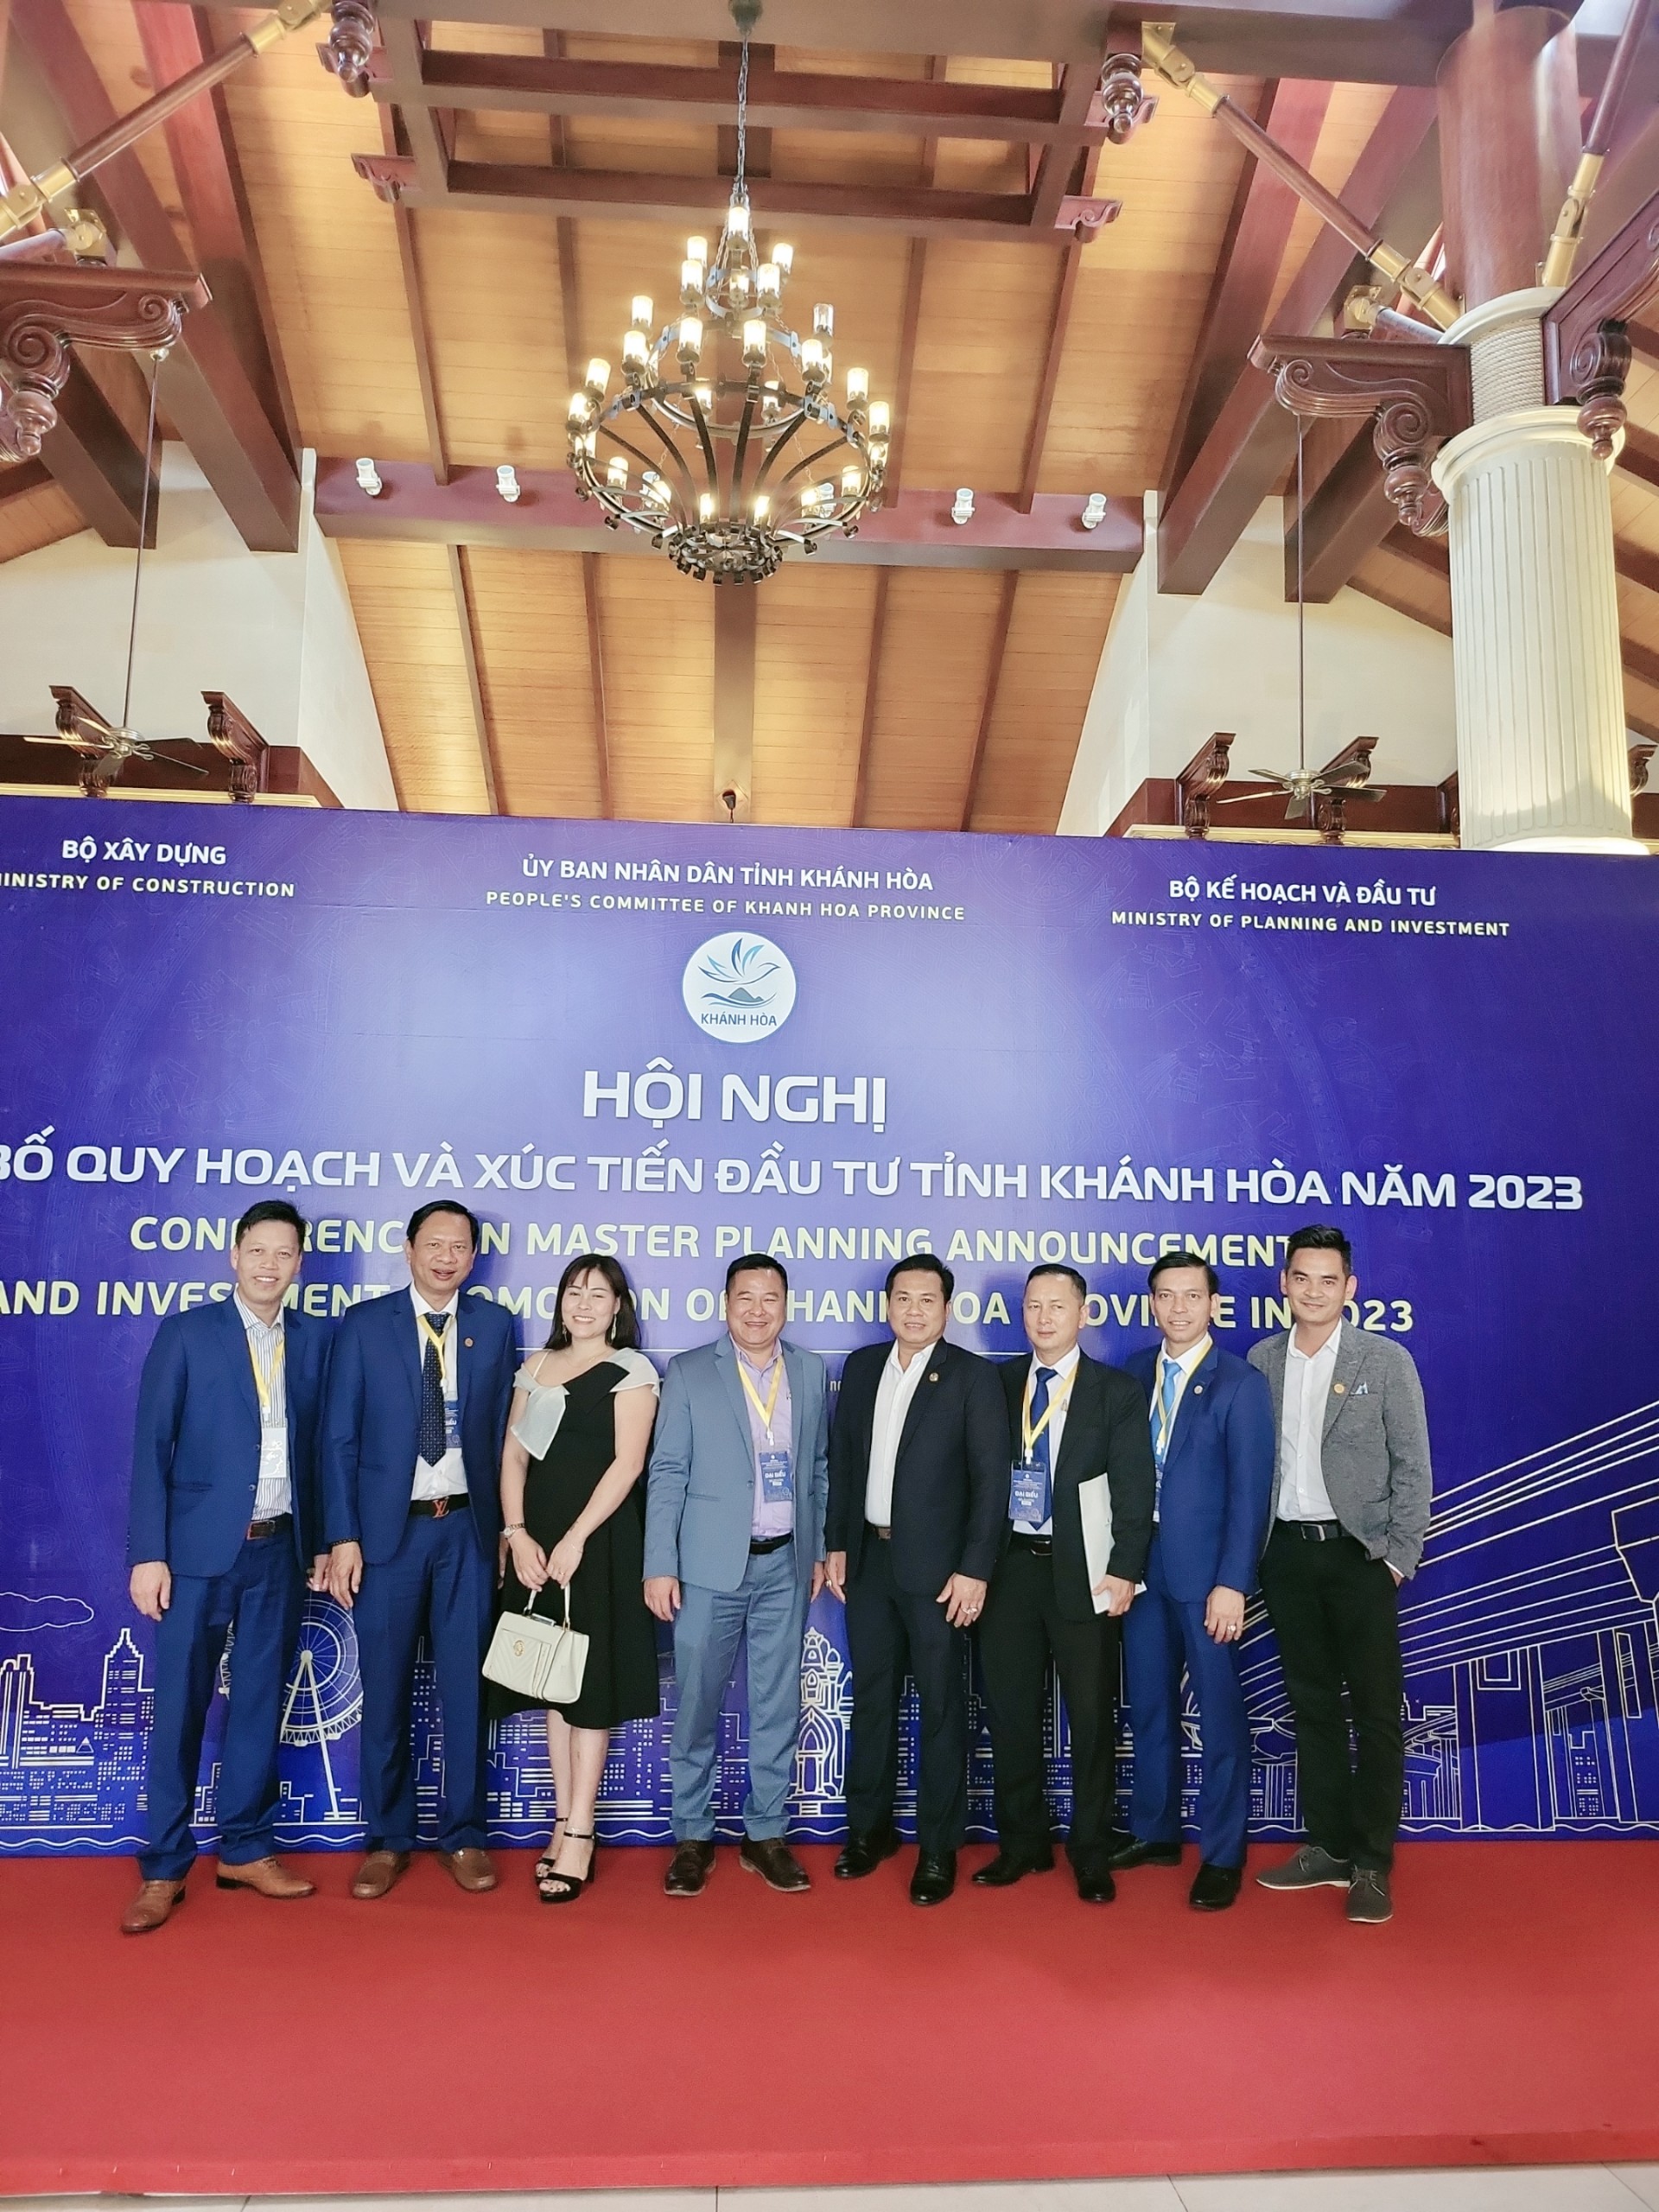 Hội nghị công bố quy hoạch và xúc tiến đầu tư tỉnh Khánh Hòa ngày 02/04/2023